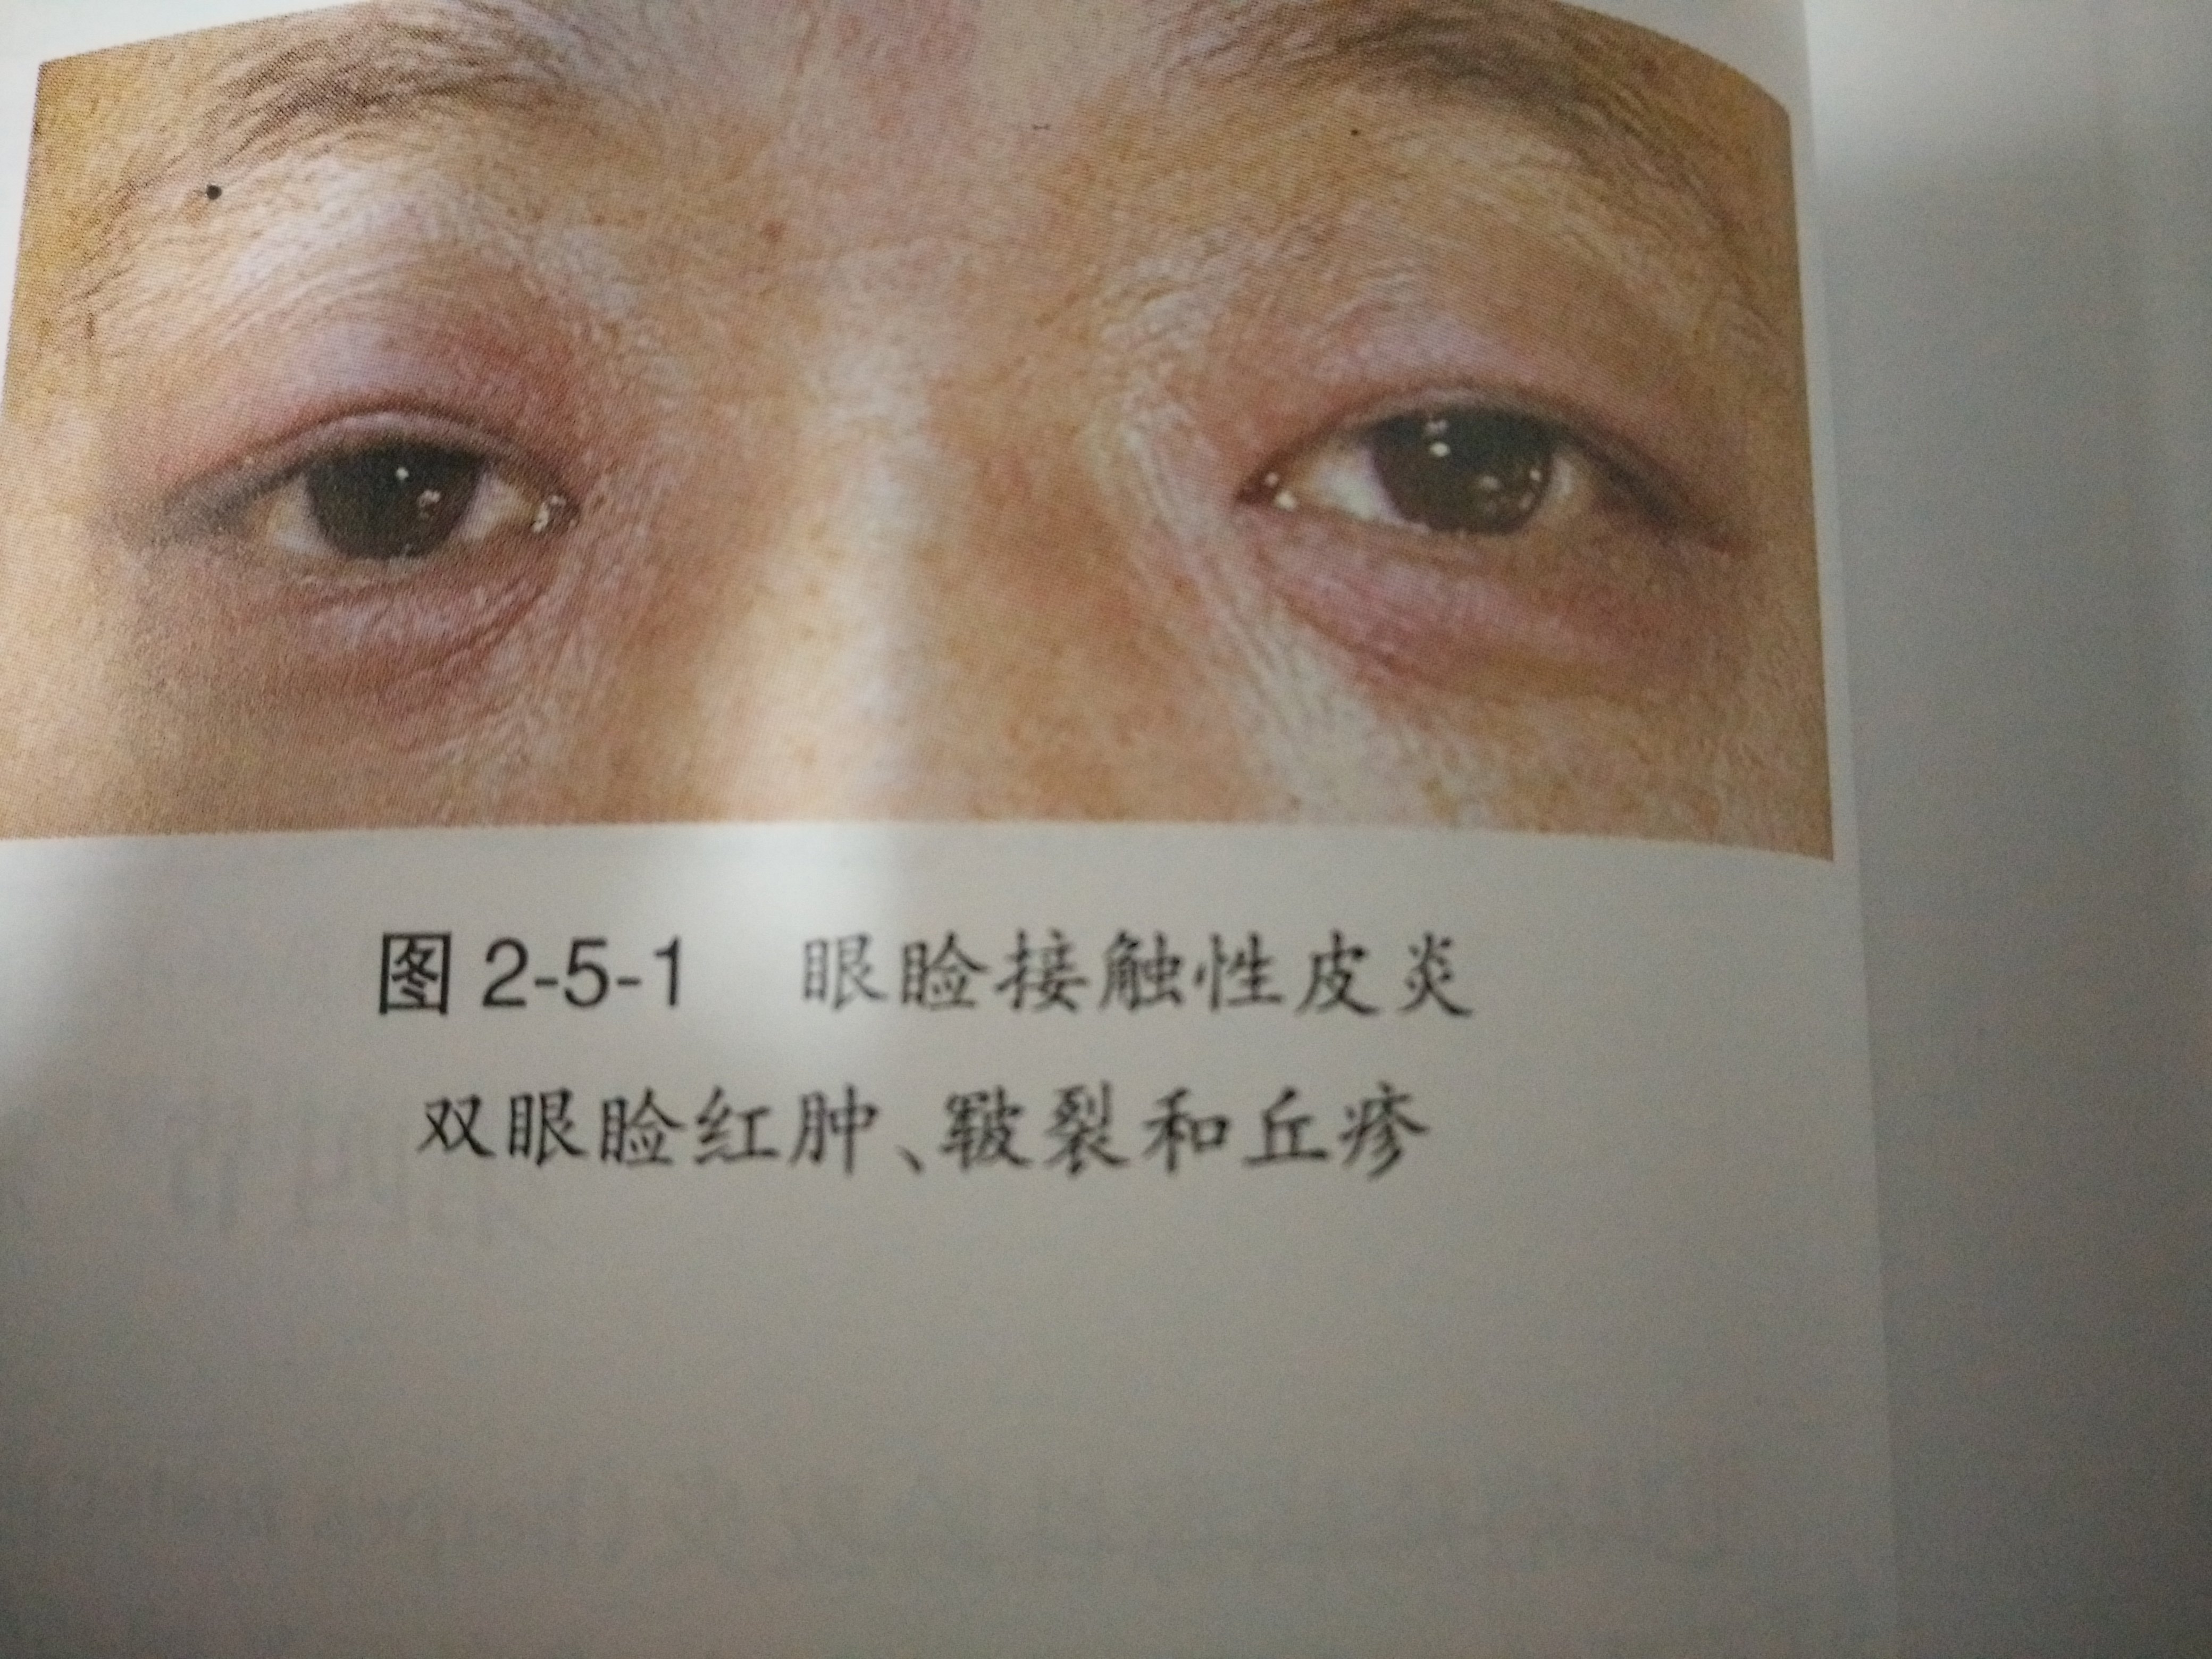 眼睑接触性皮炎的眼外表现.